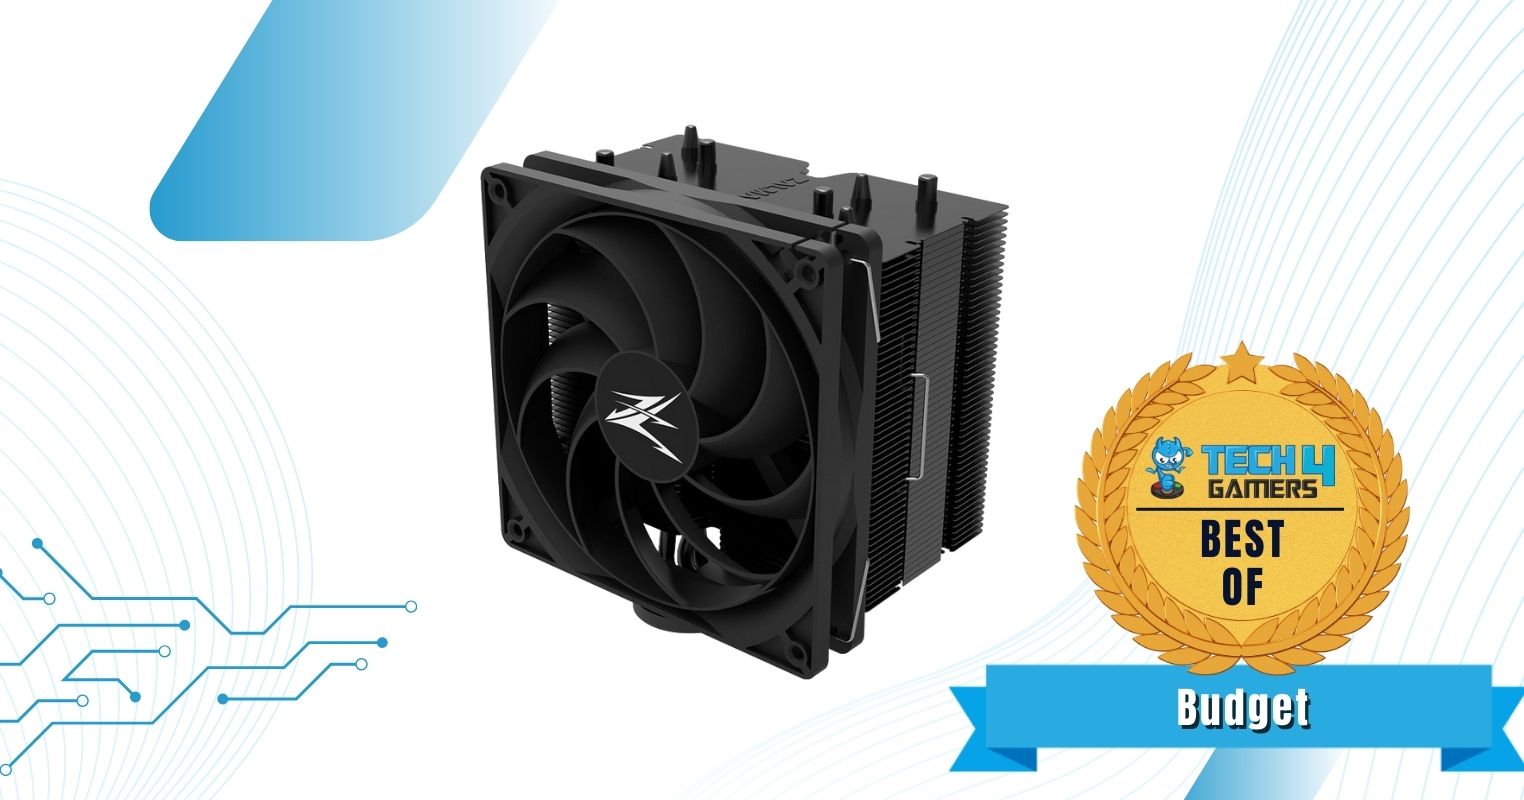 Best Budget CPU Cooler For Ryzen 9 5900X - Zalman CNPS10x Performa Black